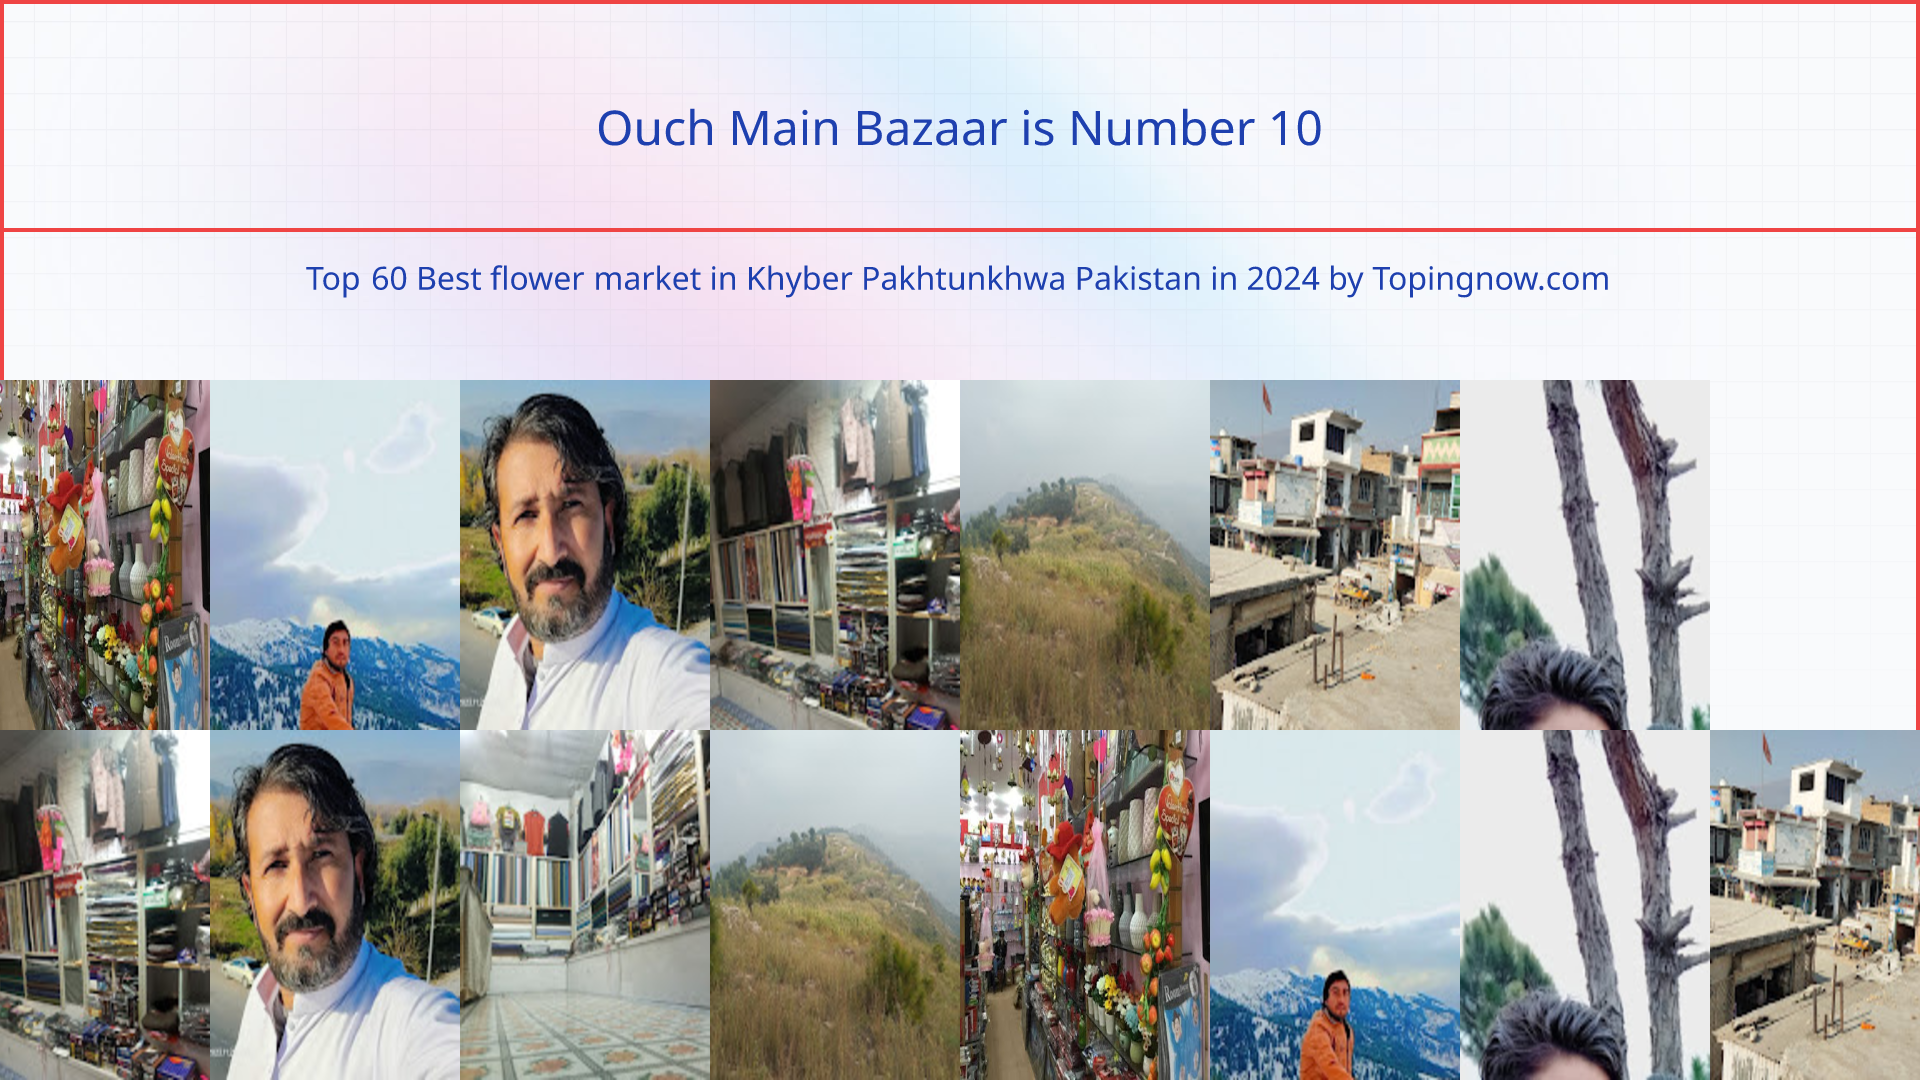 Ouch Main Bazaar: Top 60 Best flower market in Khyber Pakhtunkhwa Pakistan in 2024